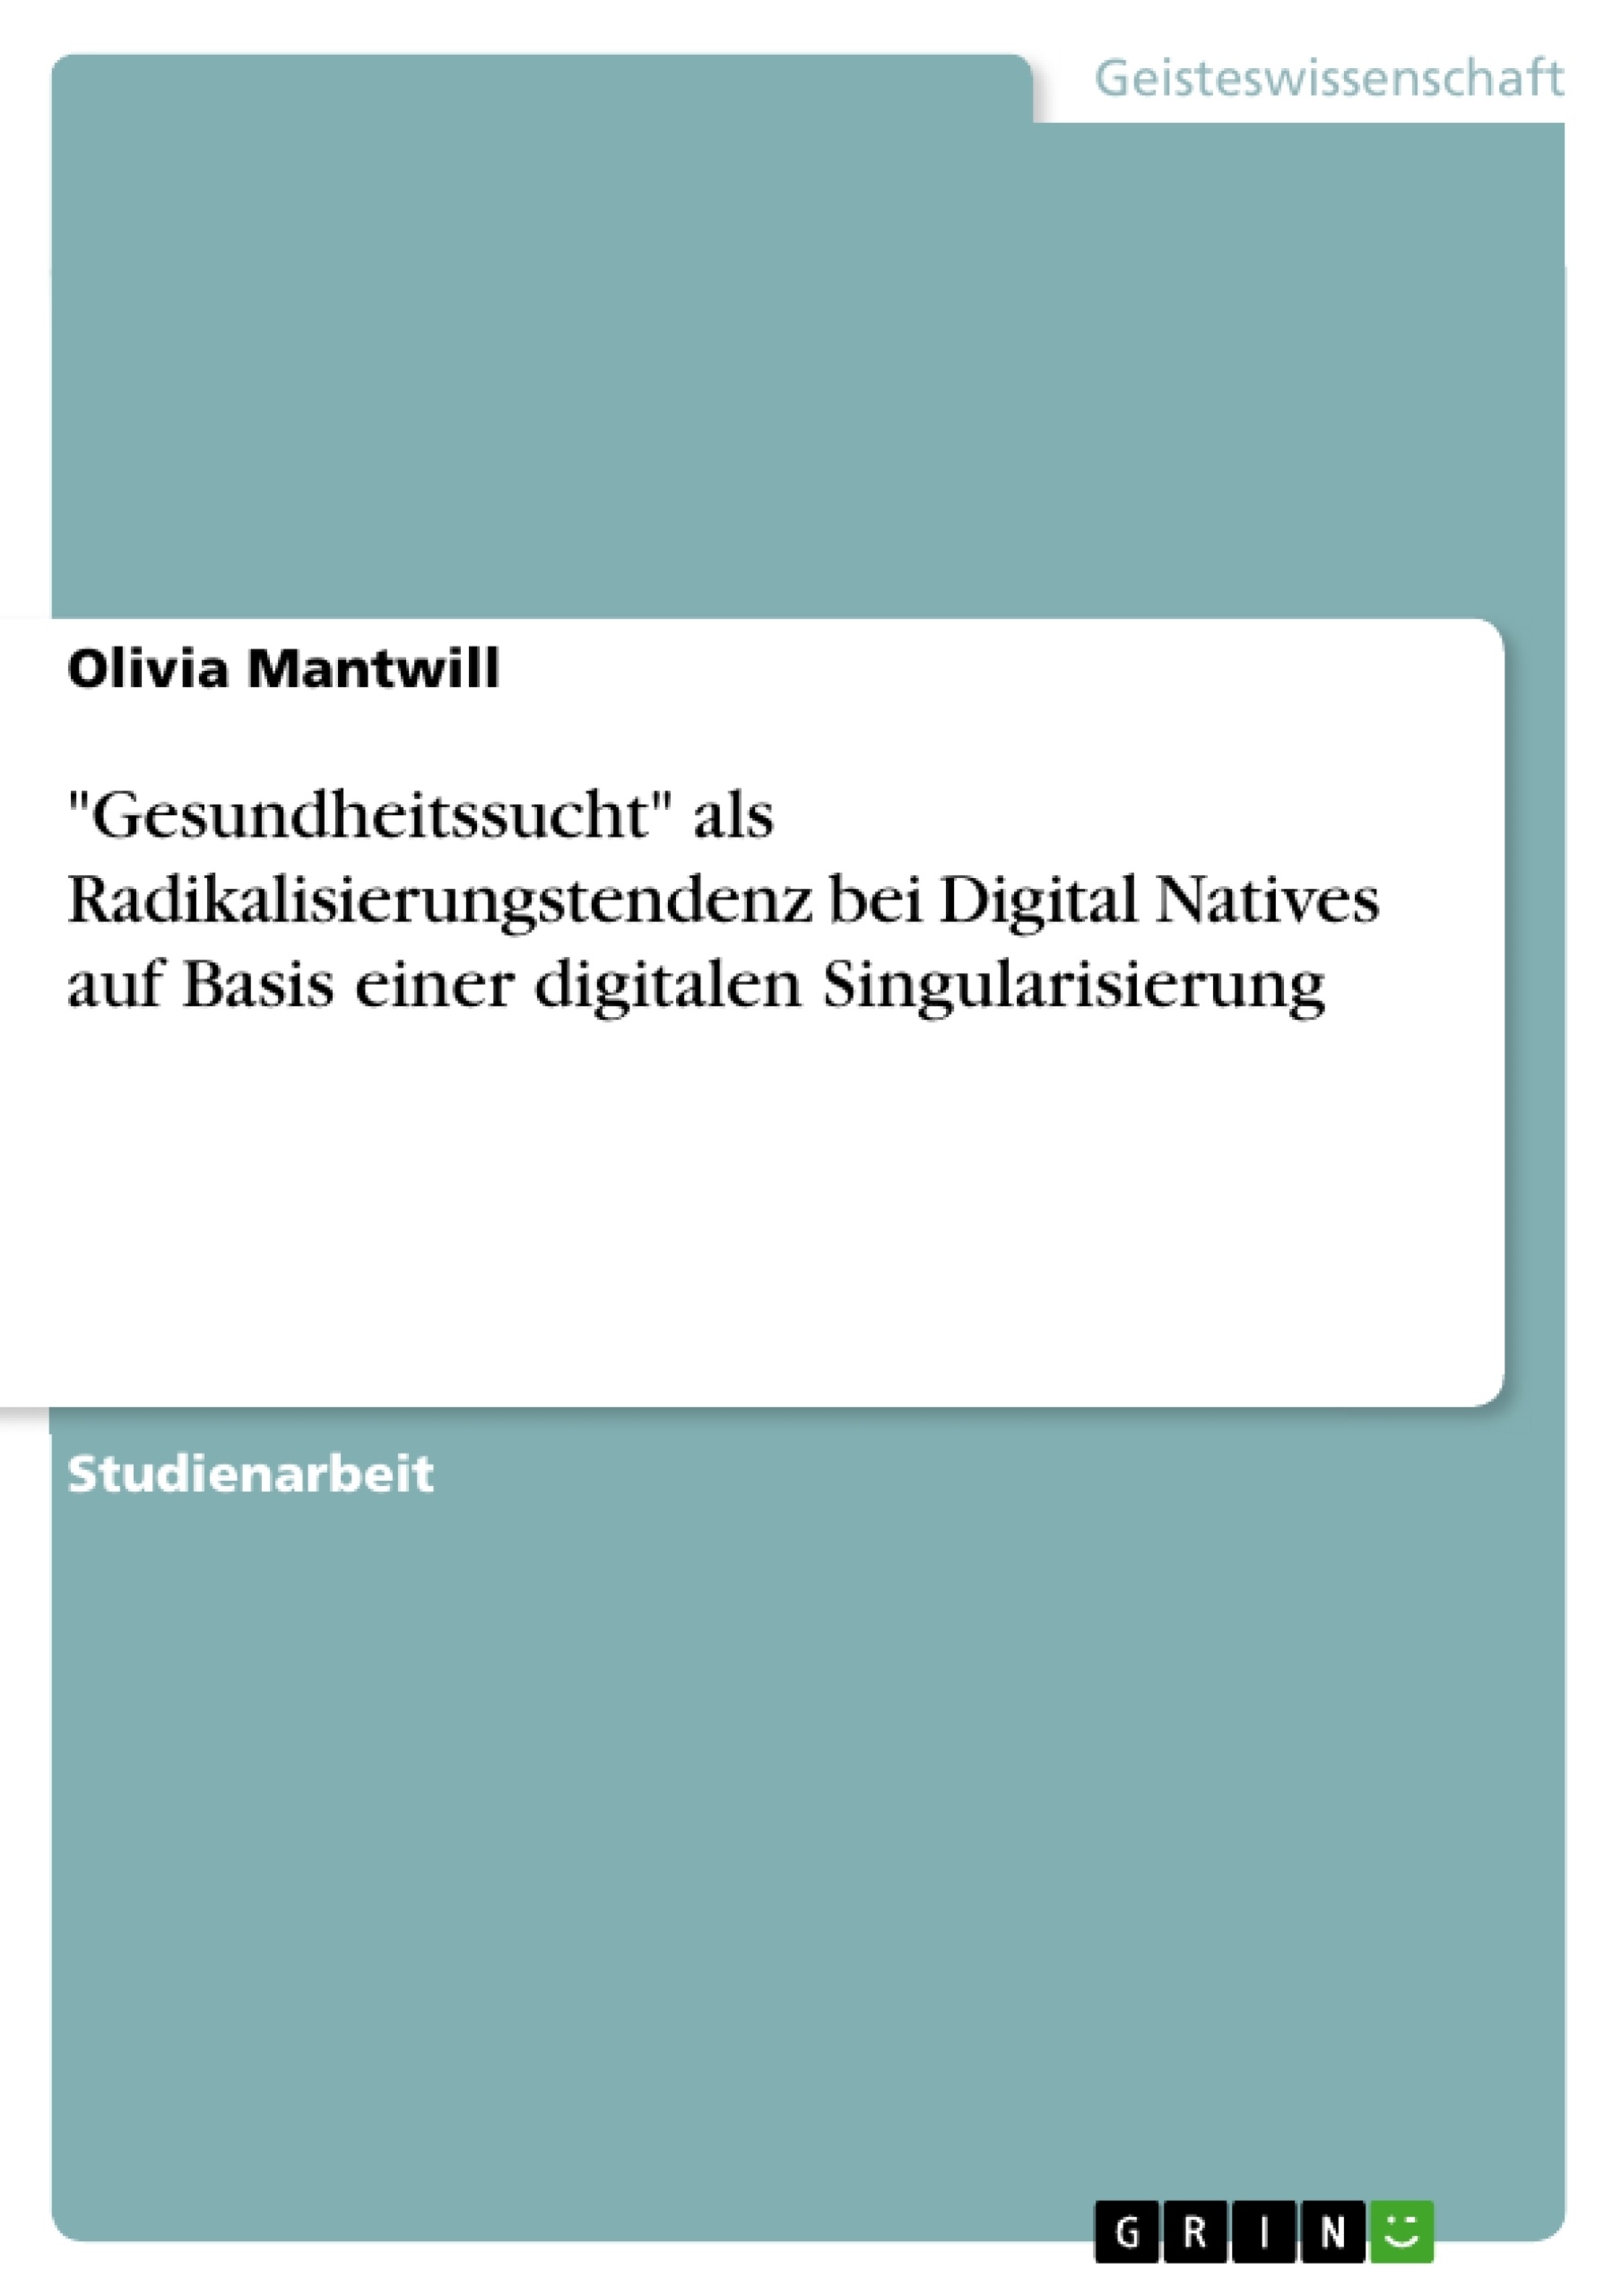 Título: "Gesundheitssucht" als Radikalisierungstendenz bei Digital Natives auf Basis einer digitalen Singularisierung